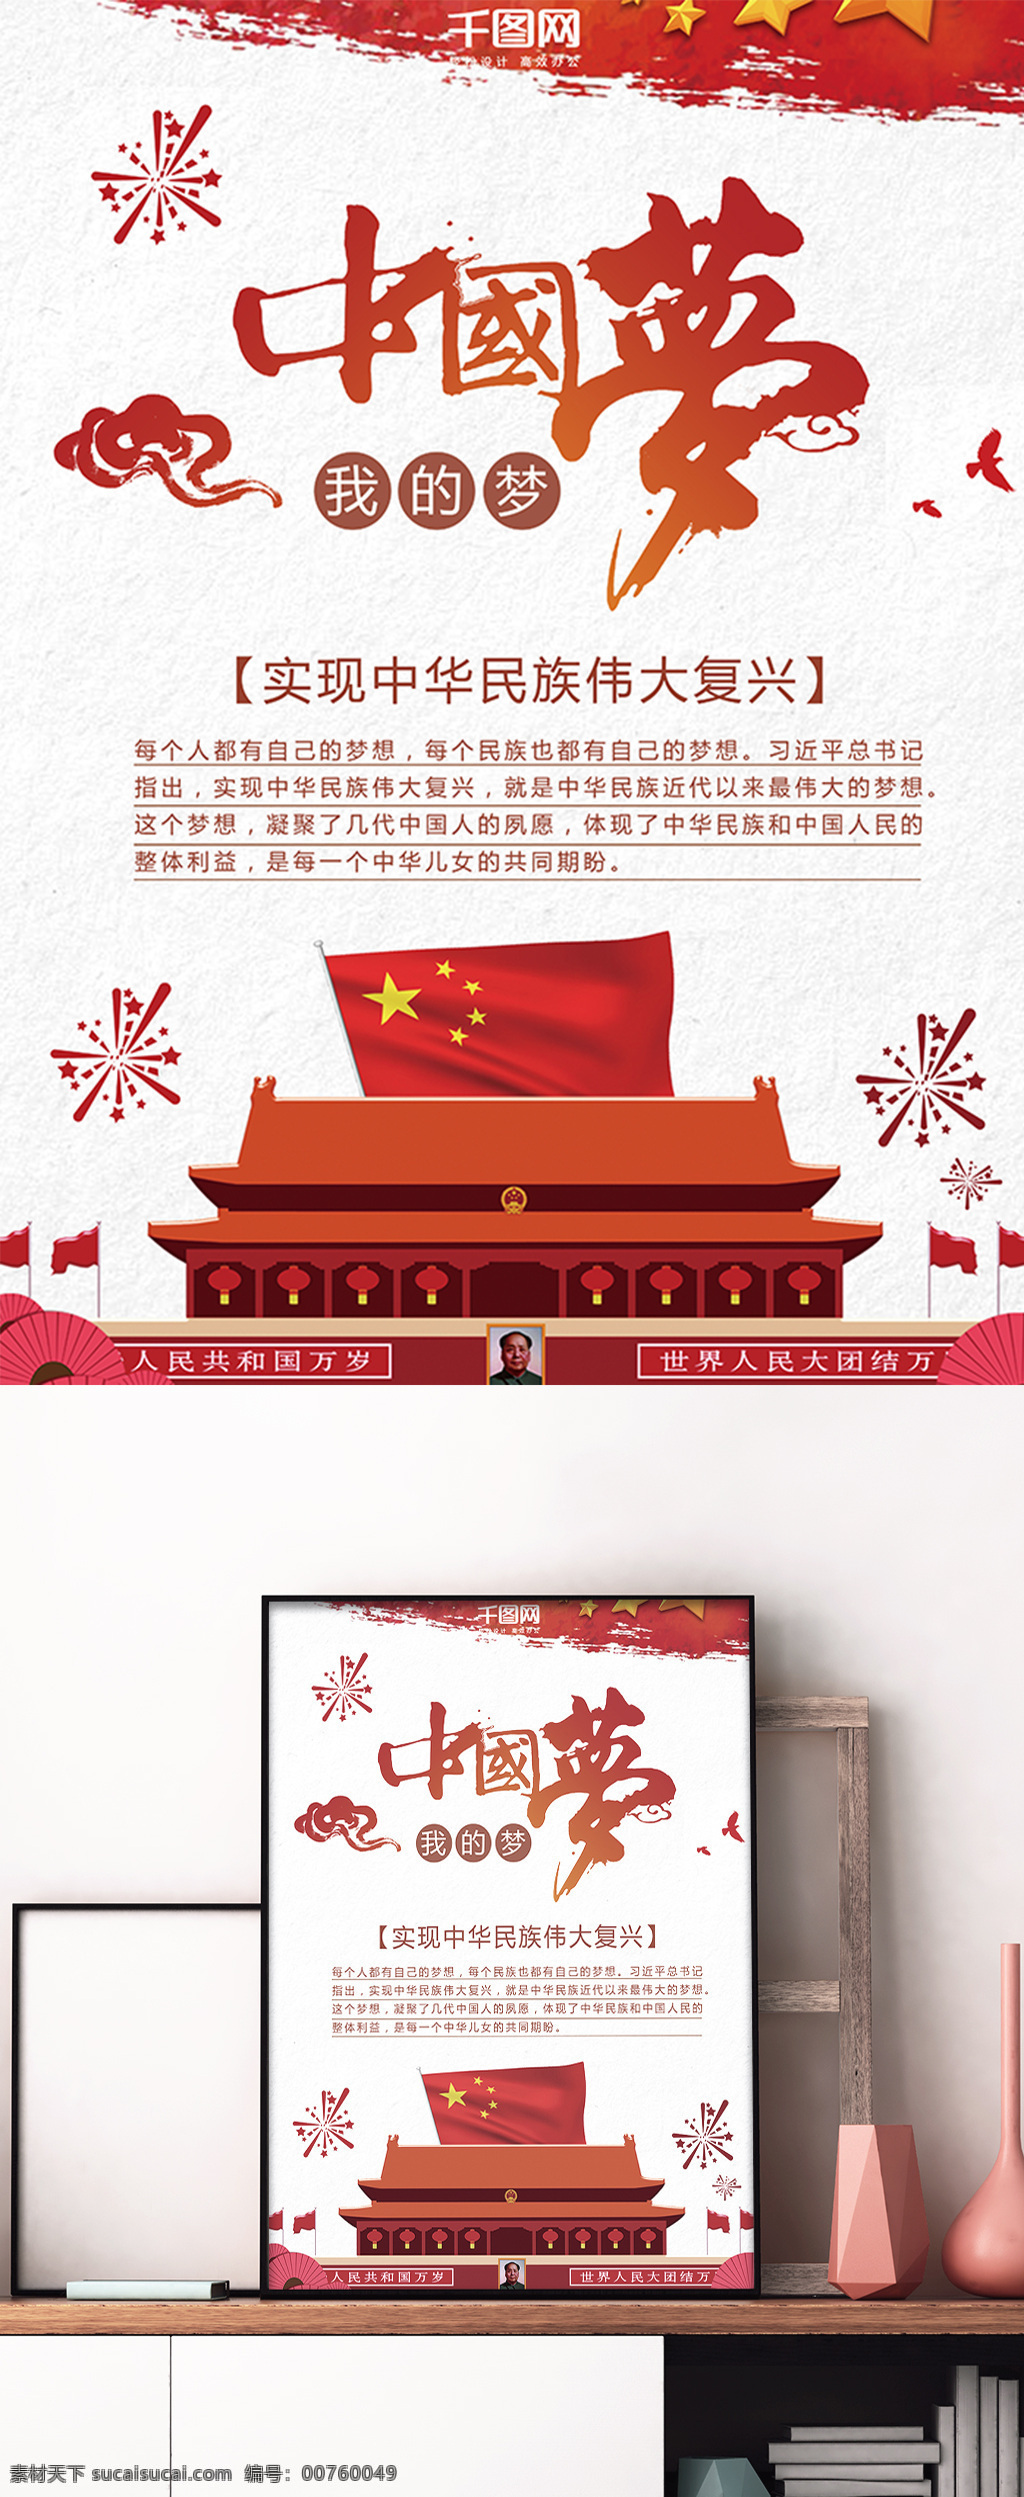 中华民族 伟大 复兴 梦 中国 海报 中华 民族 伟大复兴 我的梦 中国梦